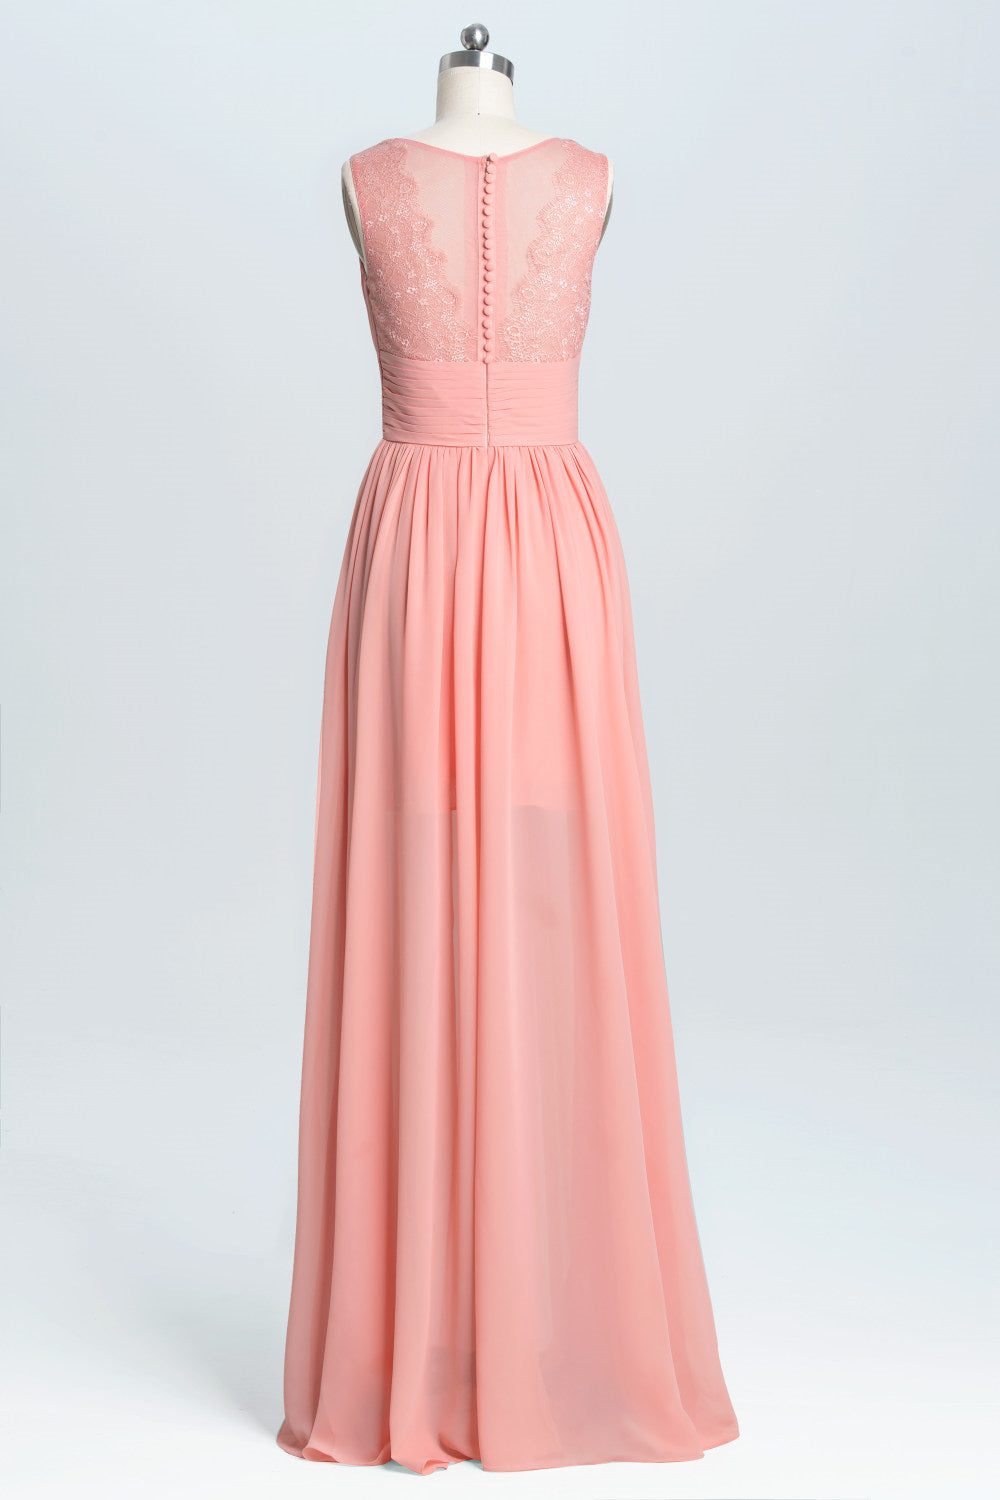 Homecoming Dress 2039, Coral A-line Chiffon Empire Long Bridesmaid Dress